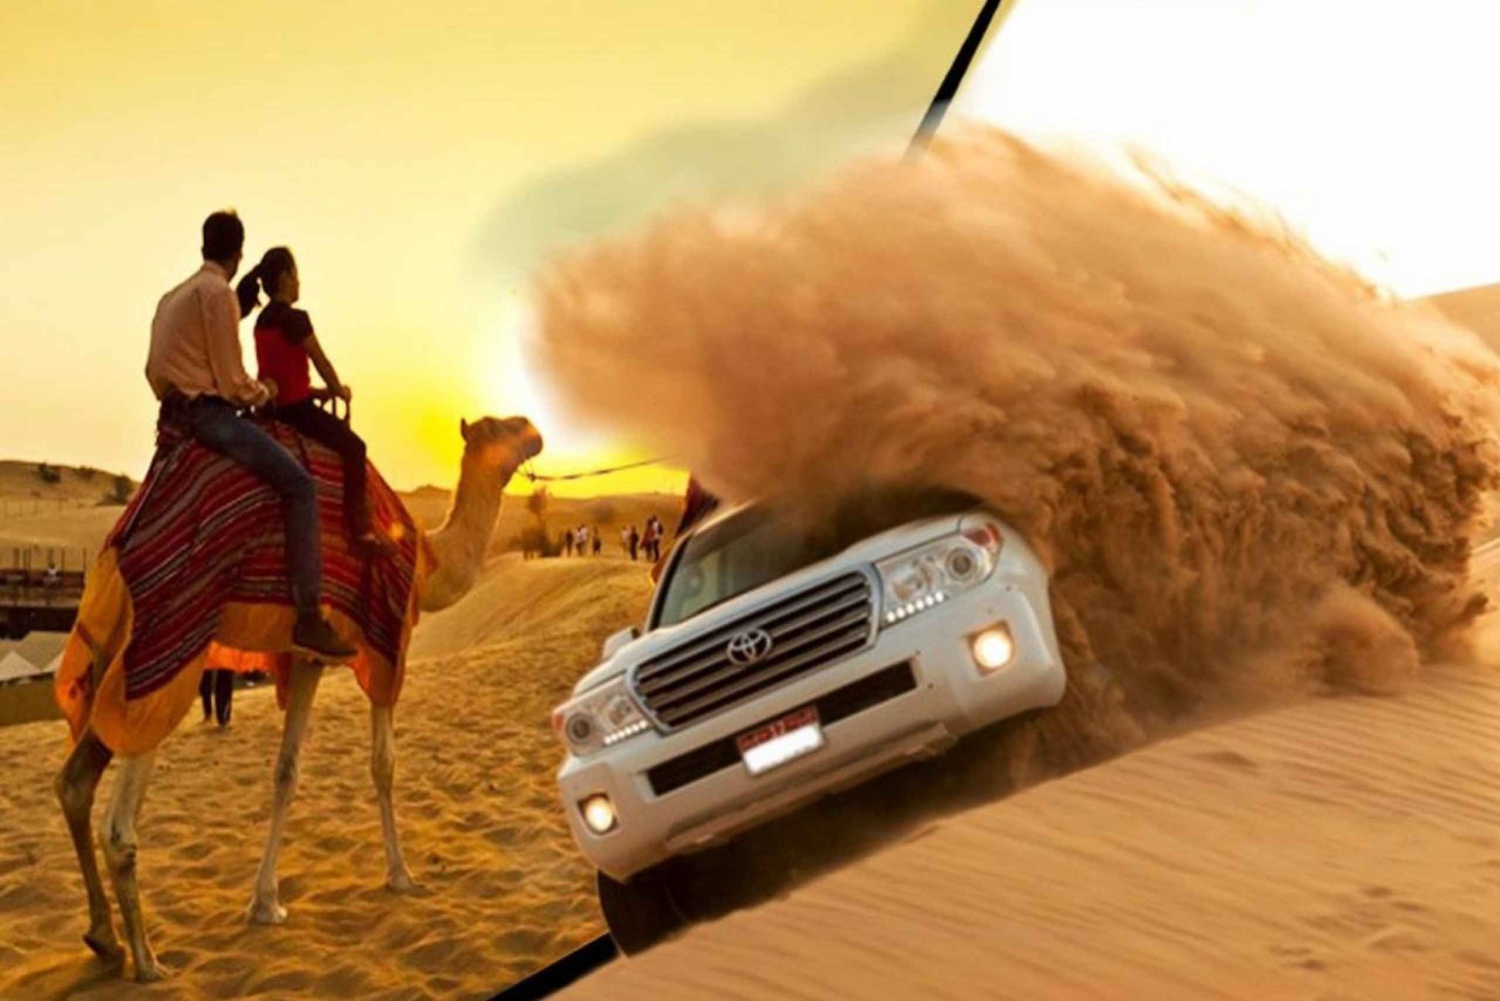 Dubaï : Safaris dans le désert d'Arabie avec barbecue, balade à dos de chameau et plus encore